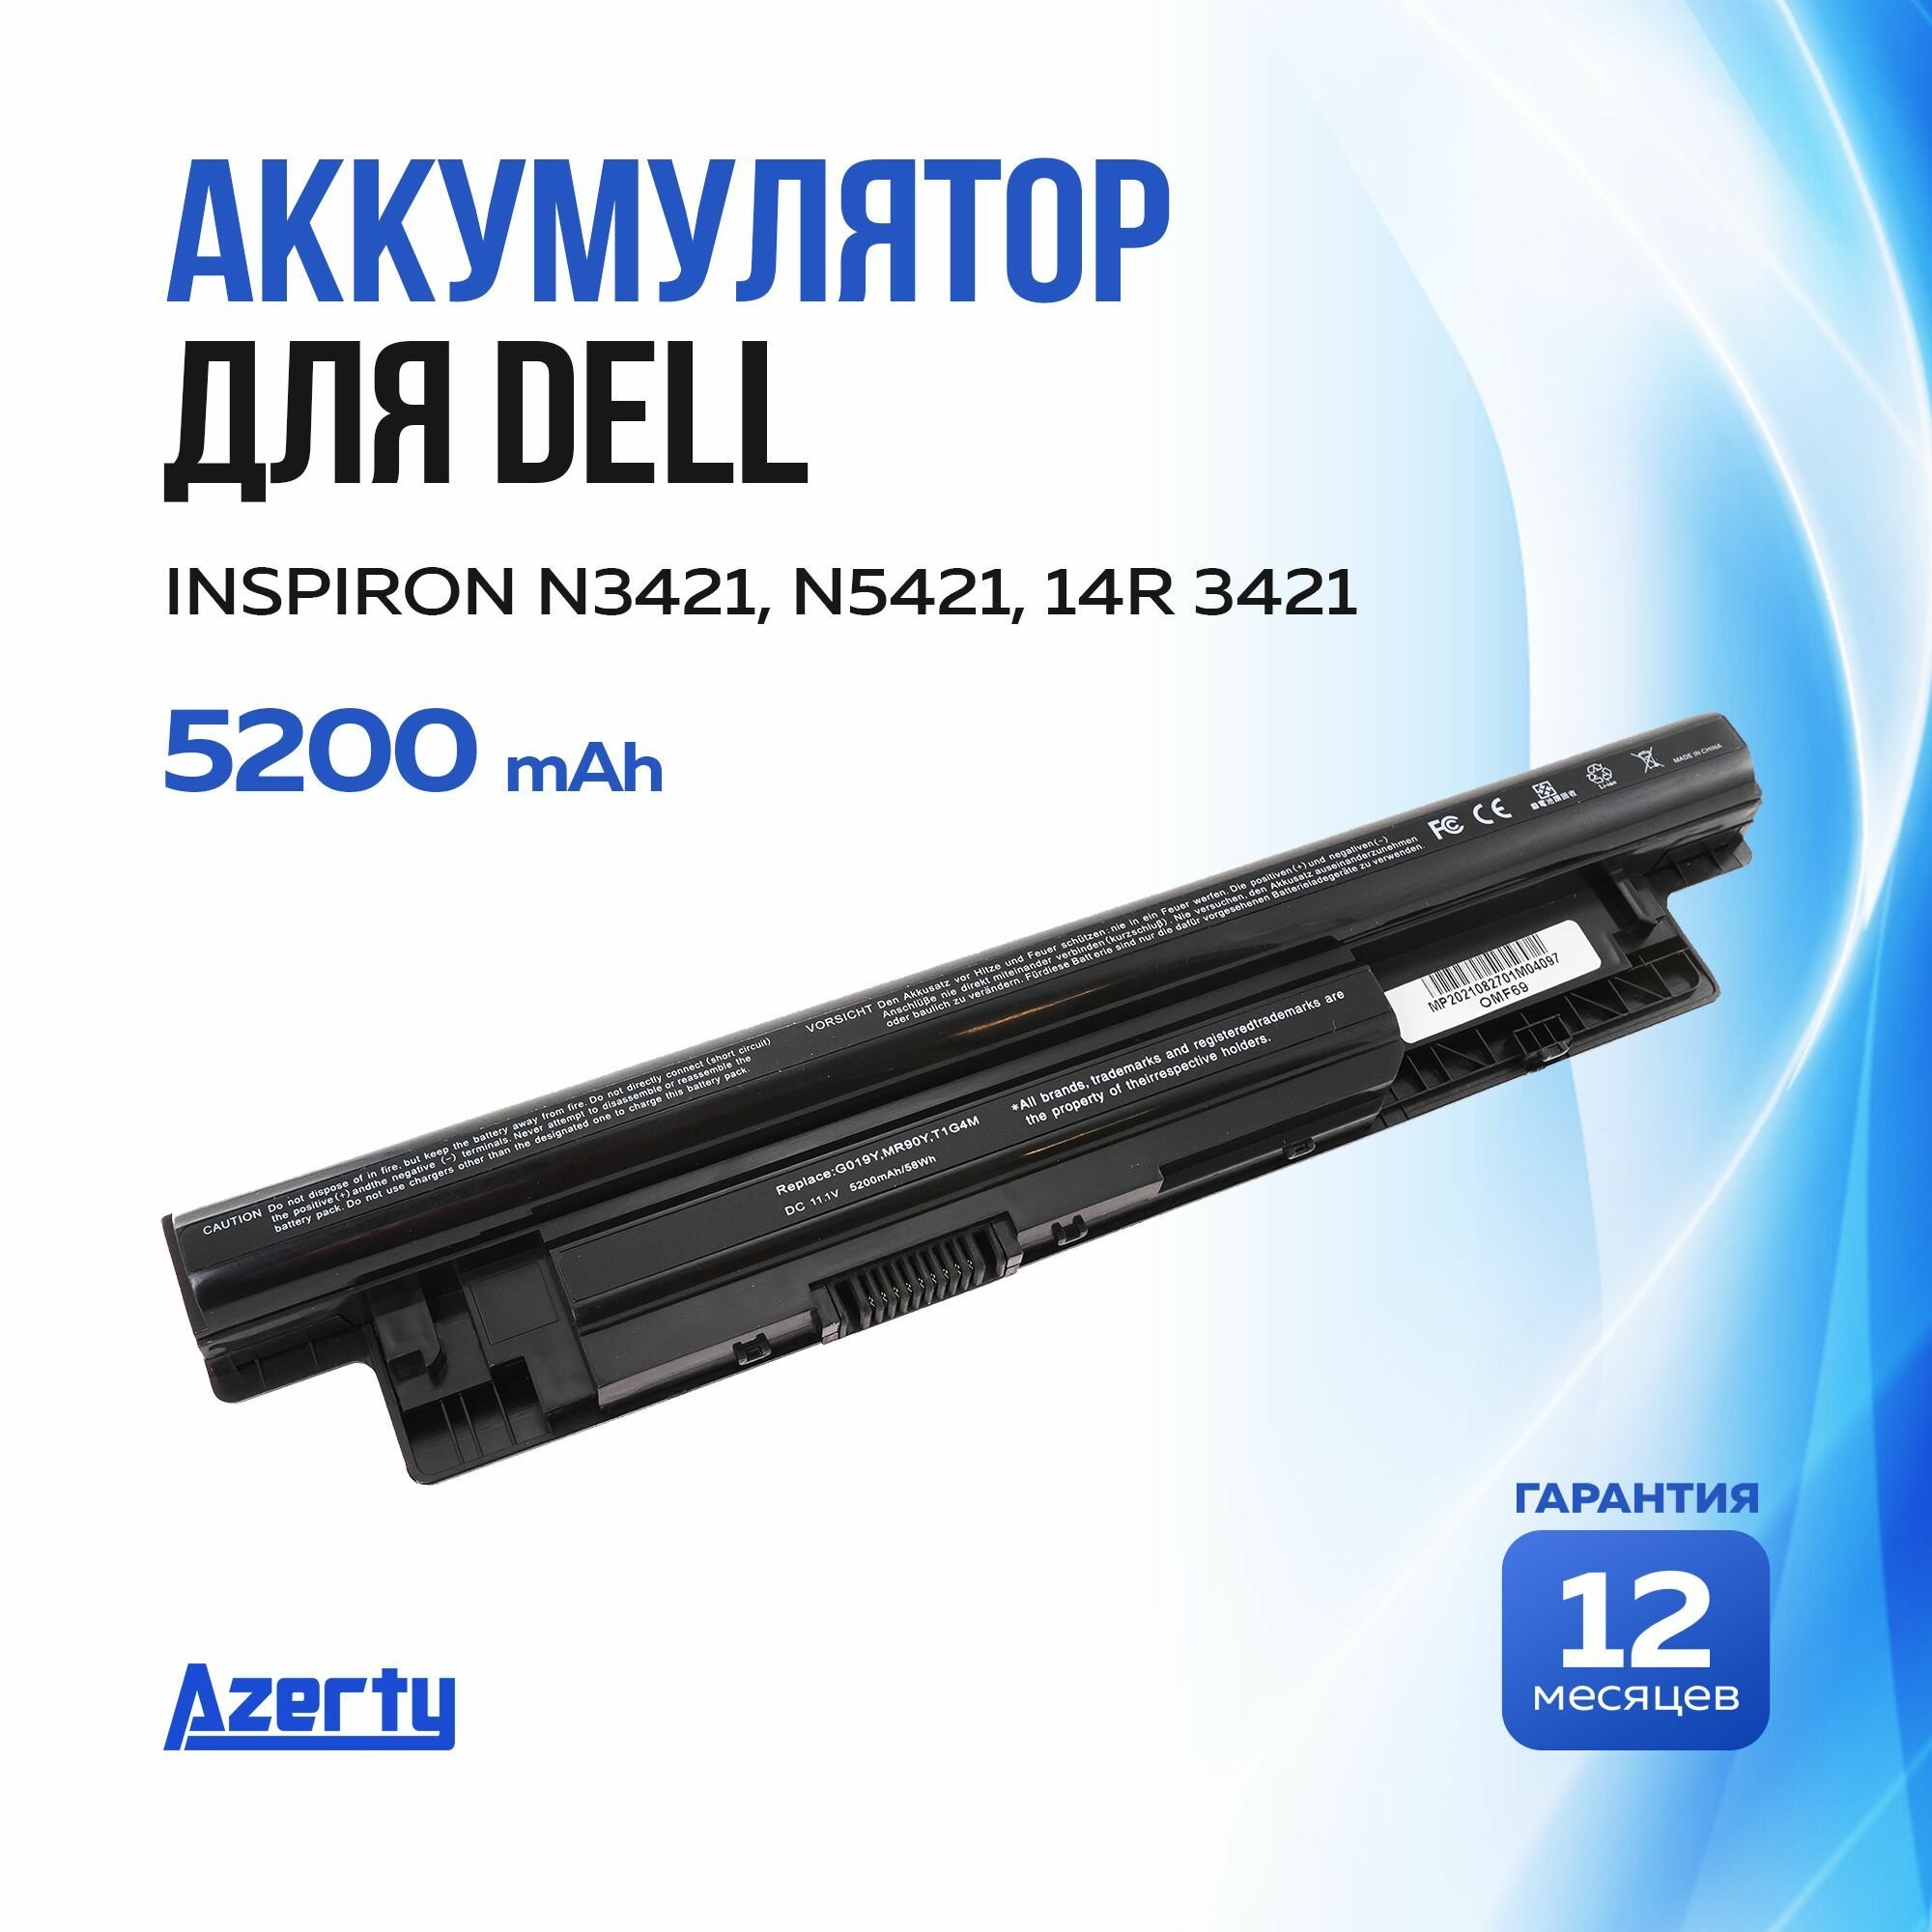 Аккумулятор MR90Y для Dell Inspiron 14 3421 / N3421 / 14R 3421 / N5421 / 15 3521 / 15R 5521 (6XH00, 8TT5W, MK1R0) 11.1V 5200mAh